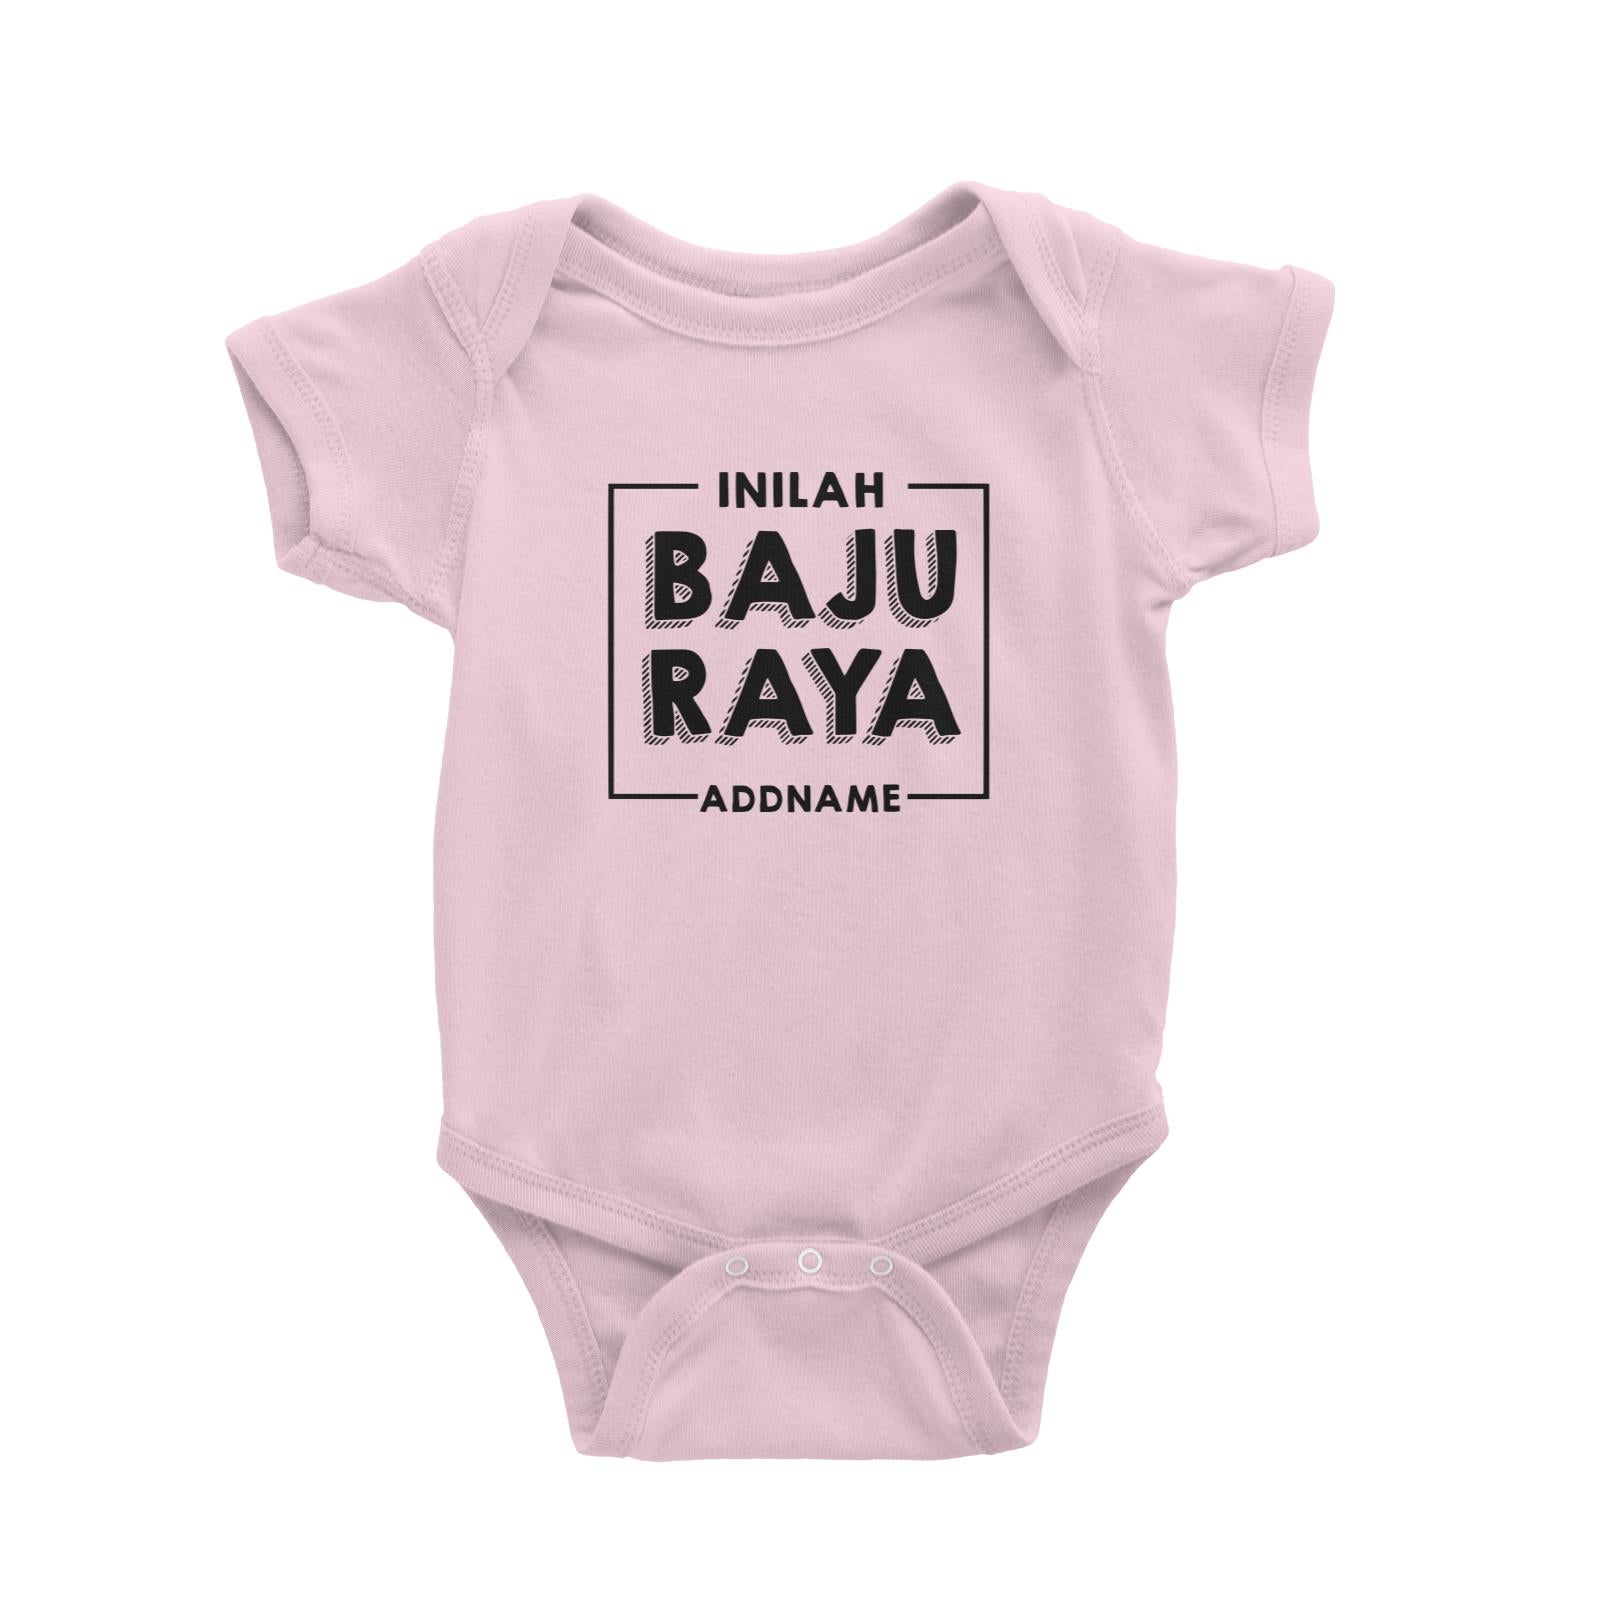 Inilah Baju Raya Baby Romper  Personalizable Designs This is My